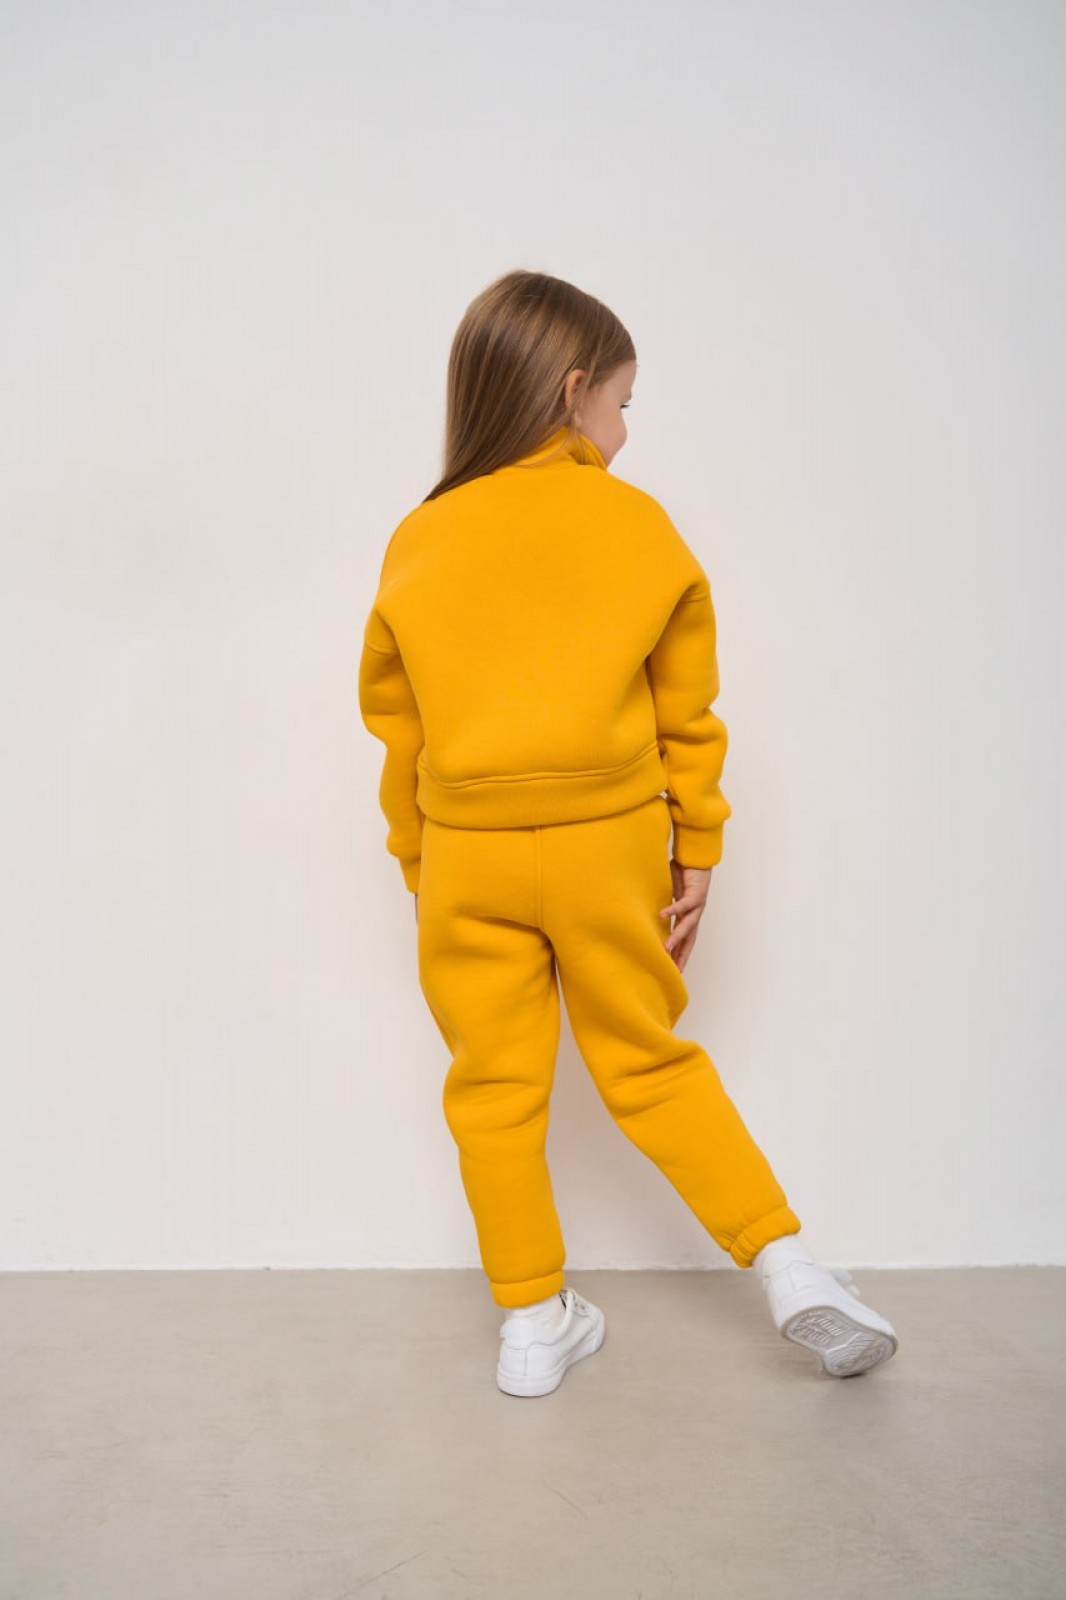 Теплий спортивний костюм для дівчинки колір жовтий р.110 444384